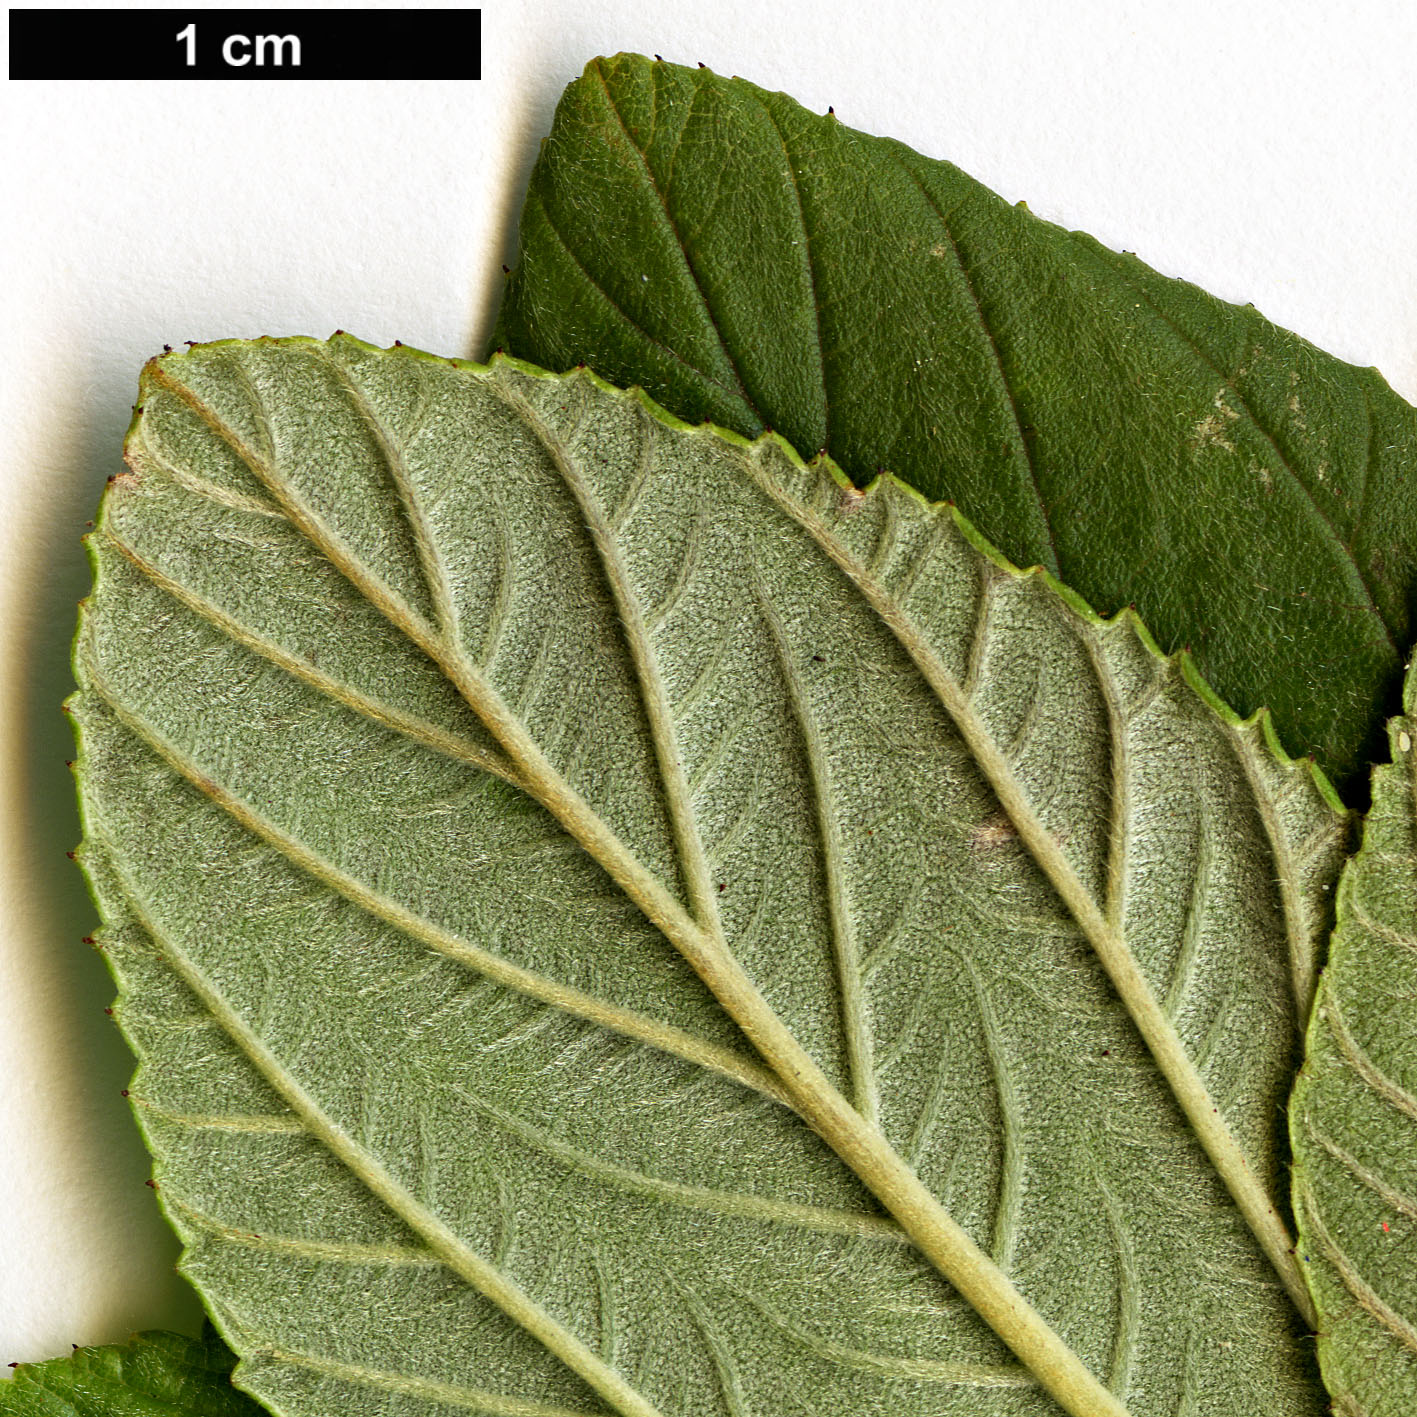 High resolution image: Family: Rhamnaceae - Genus: Ceanothus - Taxon: arboreus - SpeciesSub: ’Trewithen Blue’